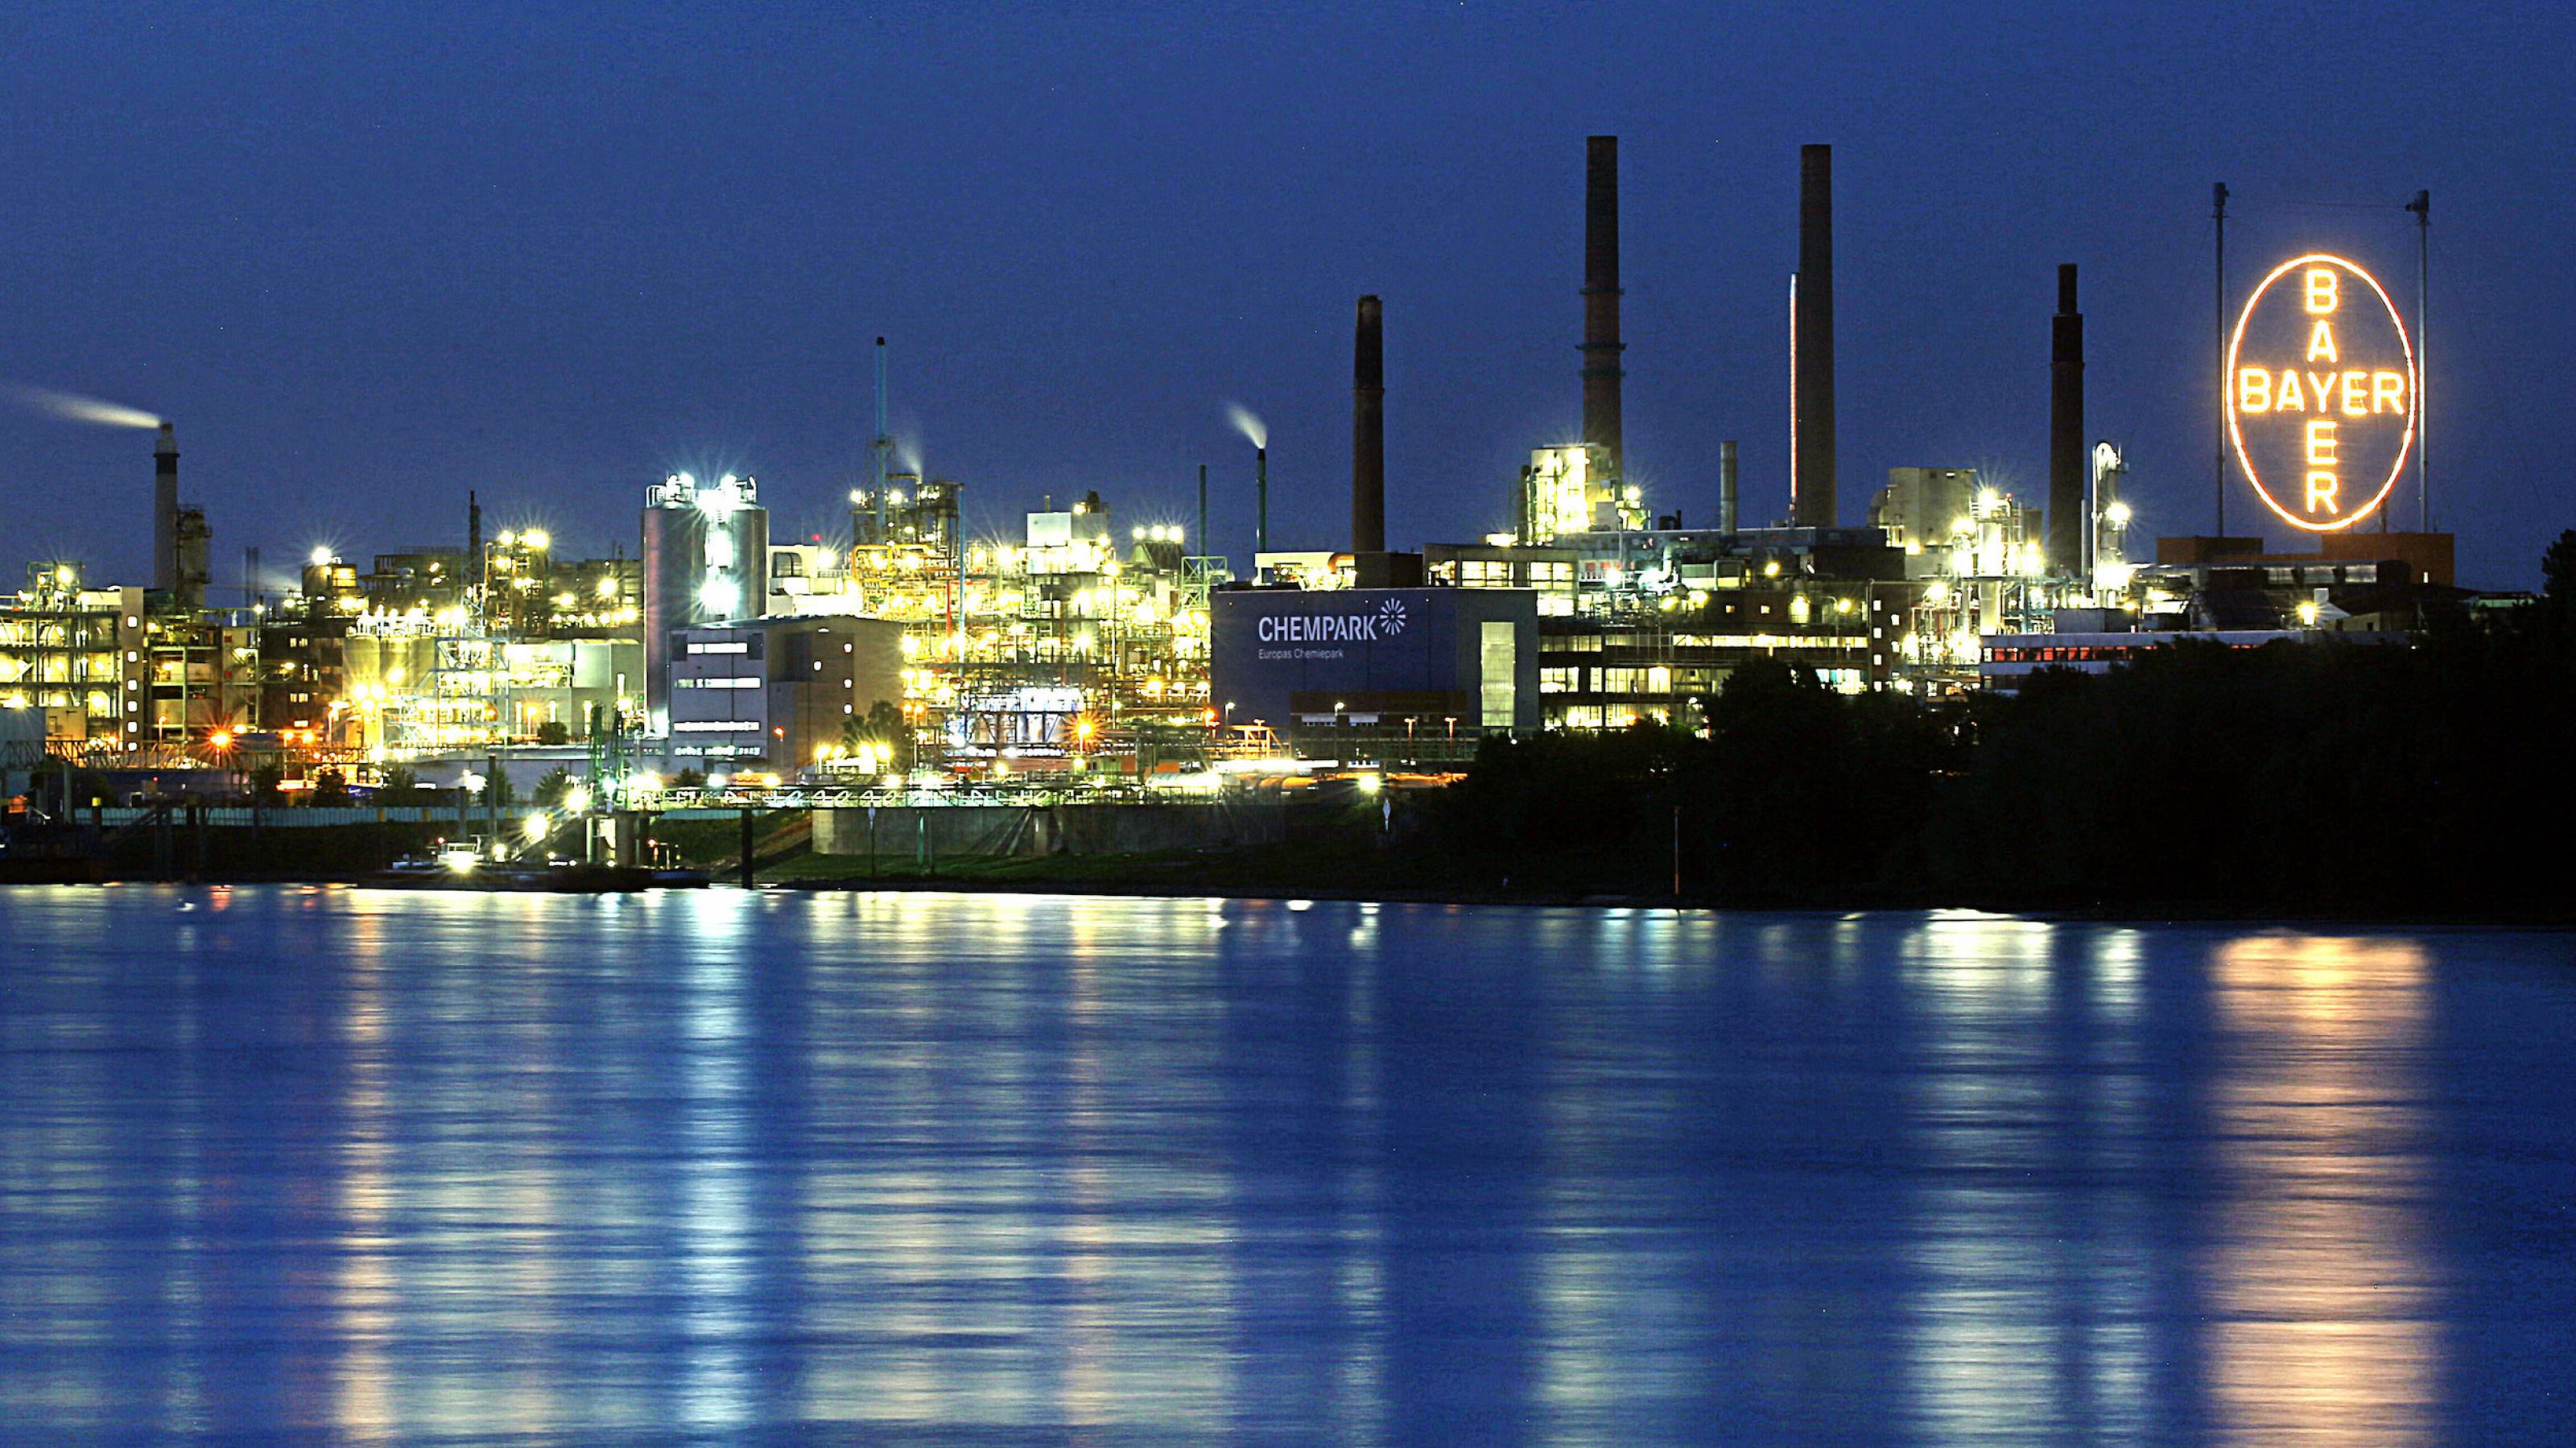 Nächtliche Aufnahme vom Rhein aus gesehen, der Fluss im Vordergrund dahinter die hell beleuchtete Chemieanlage mit dem großen Bayer-Logo.